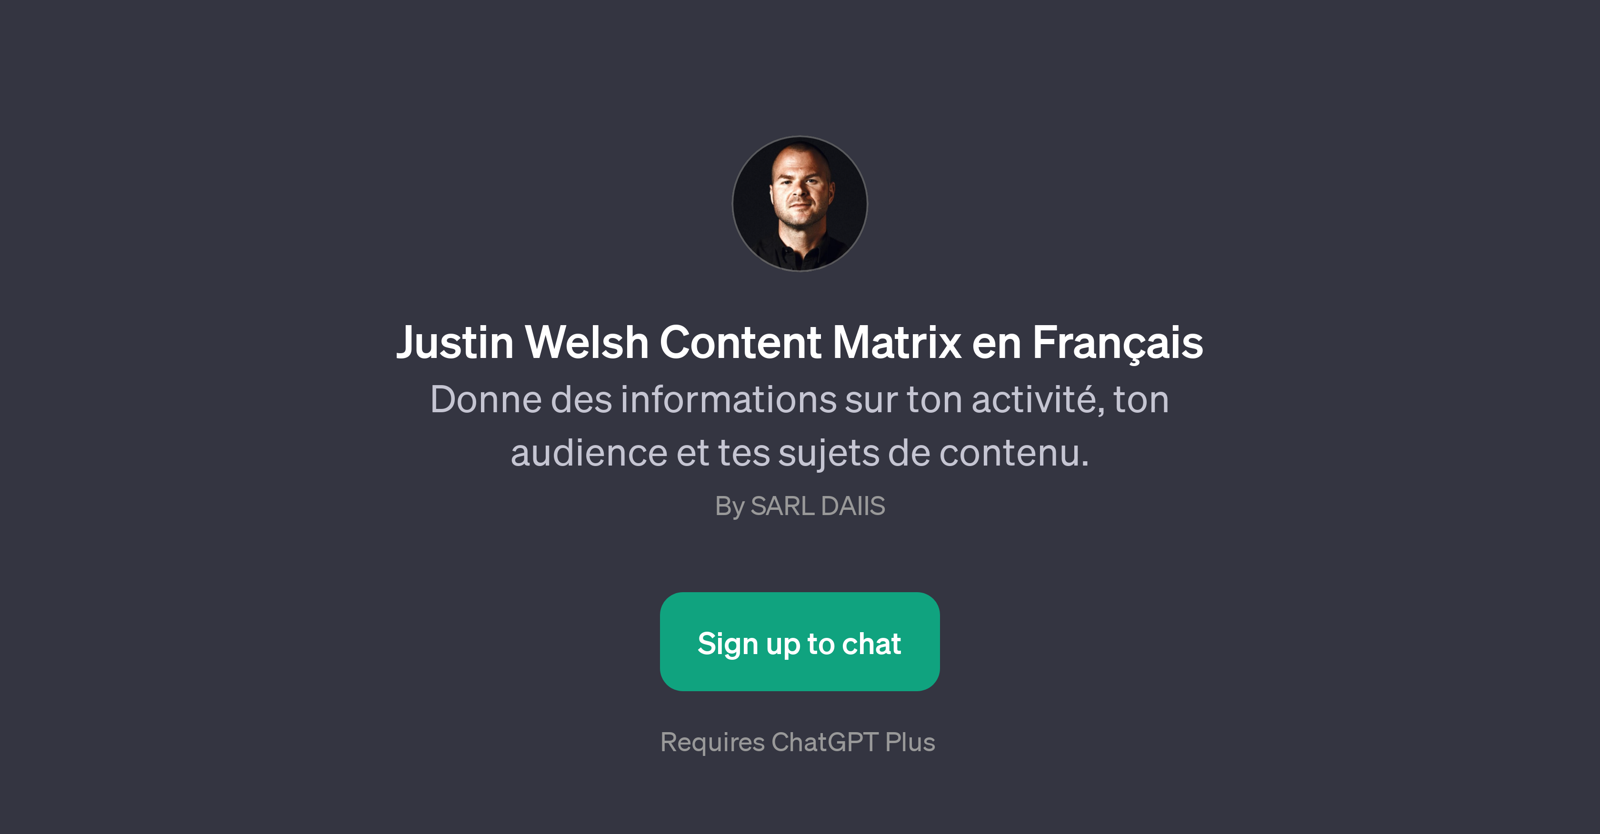 Justin Welsh Content Matrix en Franais website